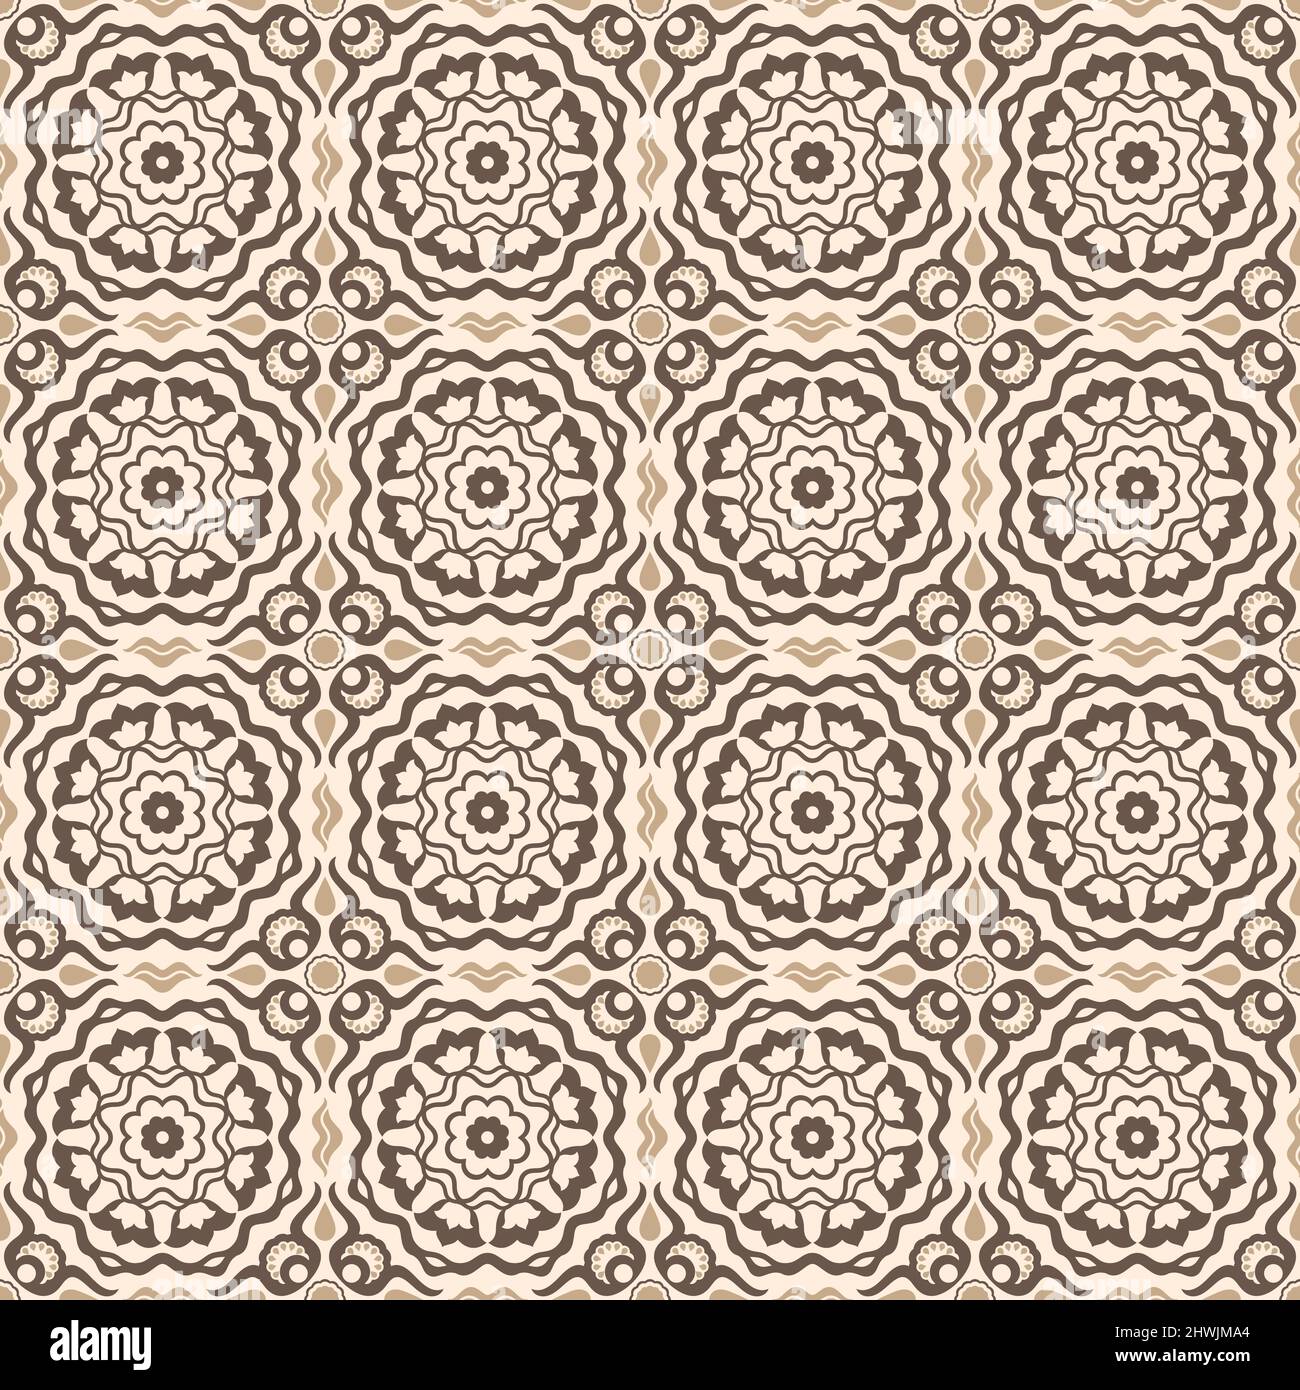 Nahtloses ornamentales Vektor-Muster in goldener Farbe mit orientalischem osmanischen Kaftan-Stil mit stilisierten Tulpenmotiven. Für Kleidung, Stoffdrucke, Stock Vektor